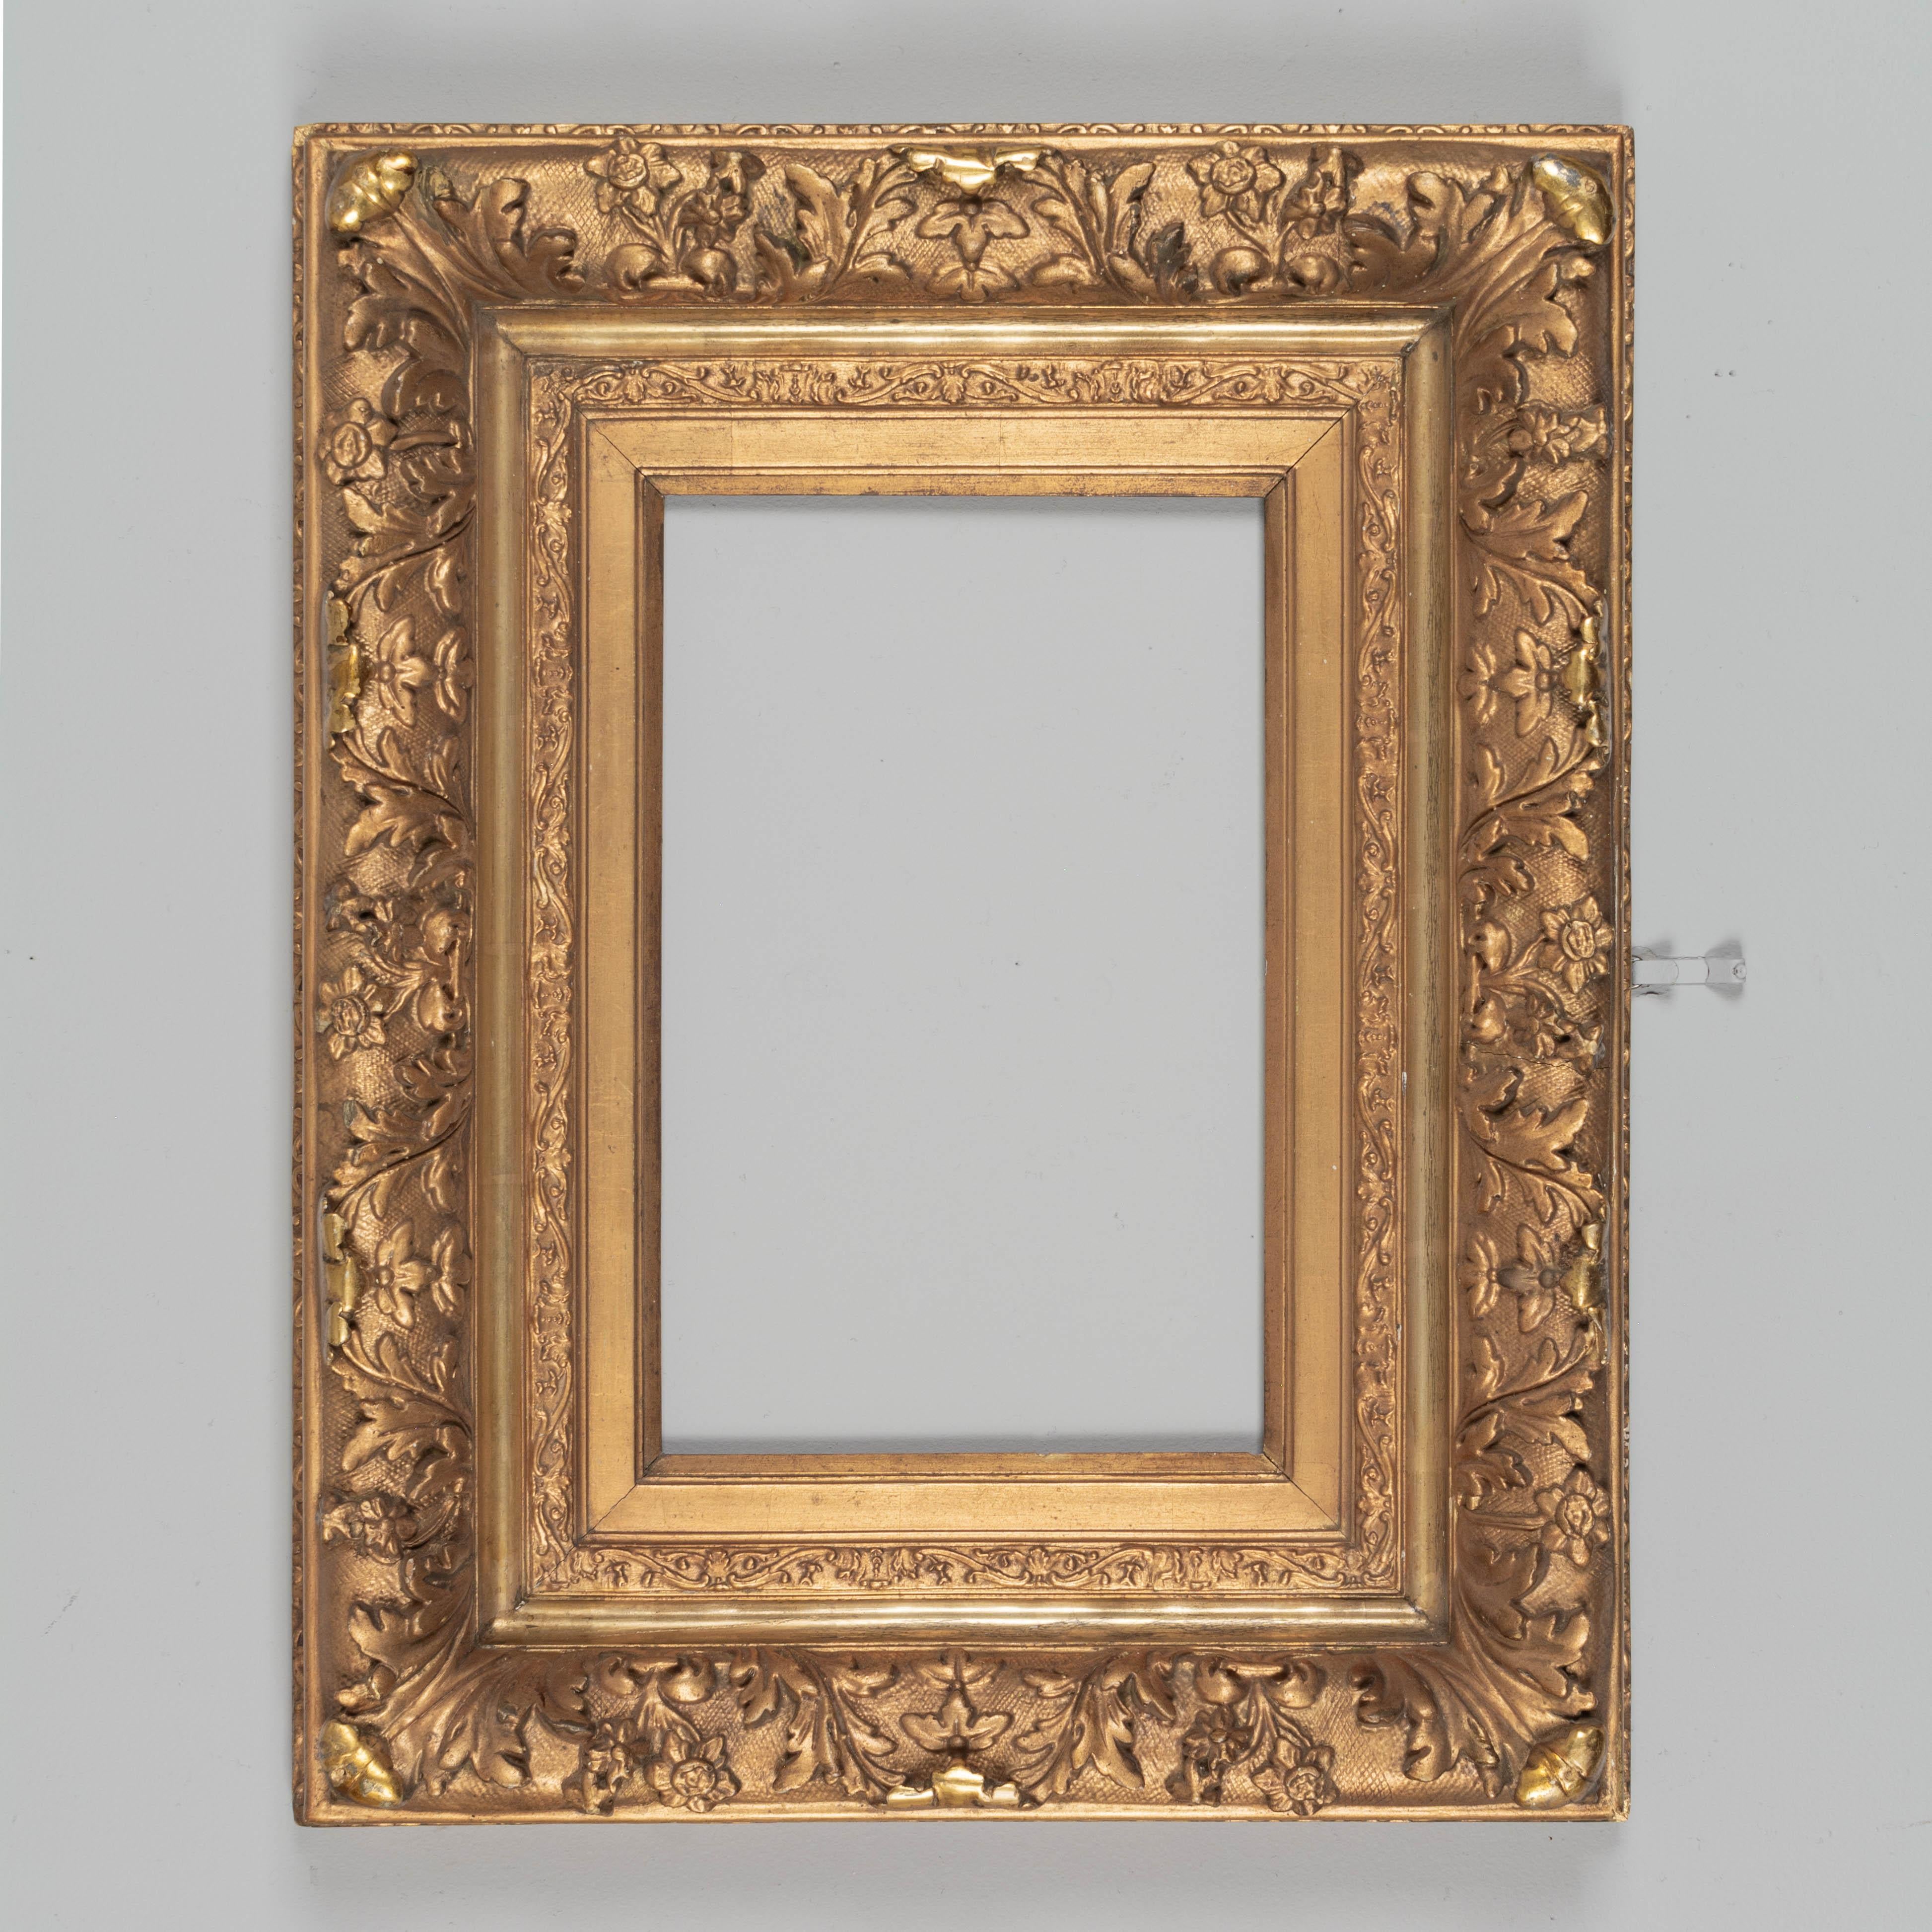 Ein französischer Bilderrahmen aus vergoldetem Holz aus dem 19. Jahrhundert der Beaux Arts. Feiner, schwerer, vergoldeter Stuck. Sehr guter Zustand mit kleinen Schäden.  Schöner Maßstab für die Verwendung als Spiegelrahmen. CIRCA 1880-1900.
Äußere